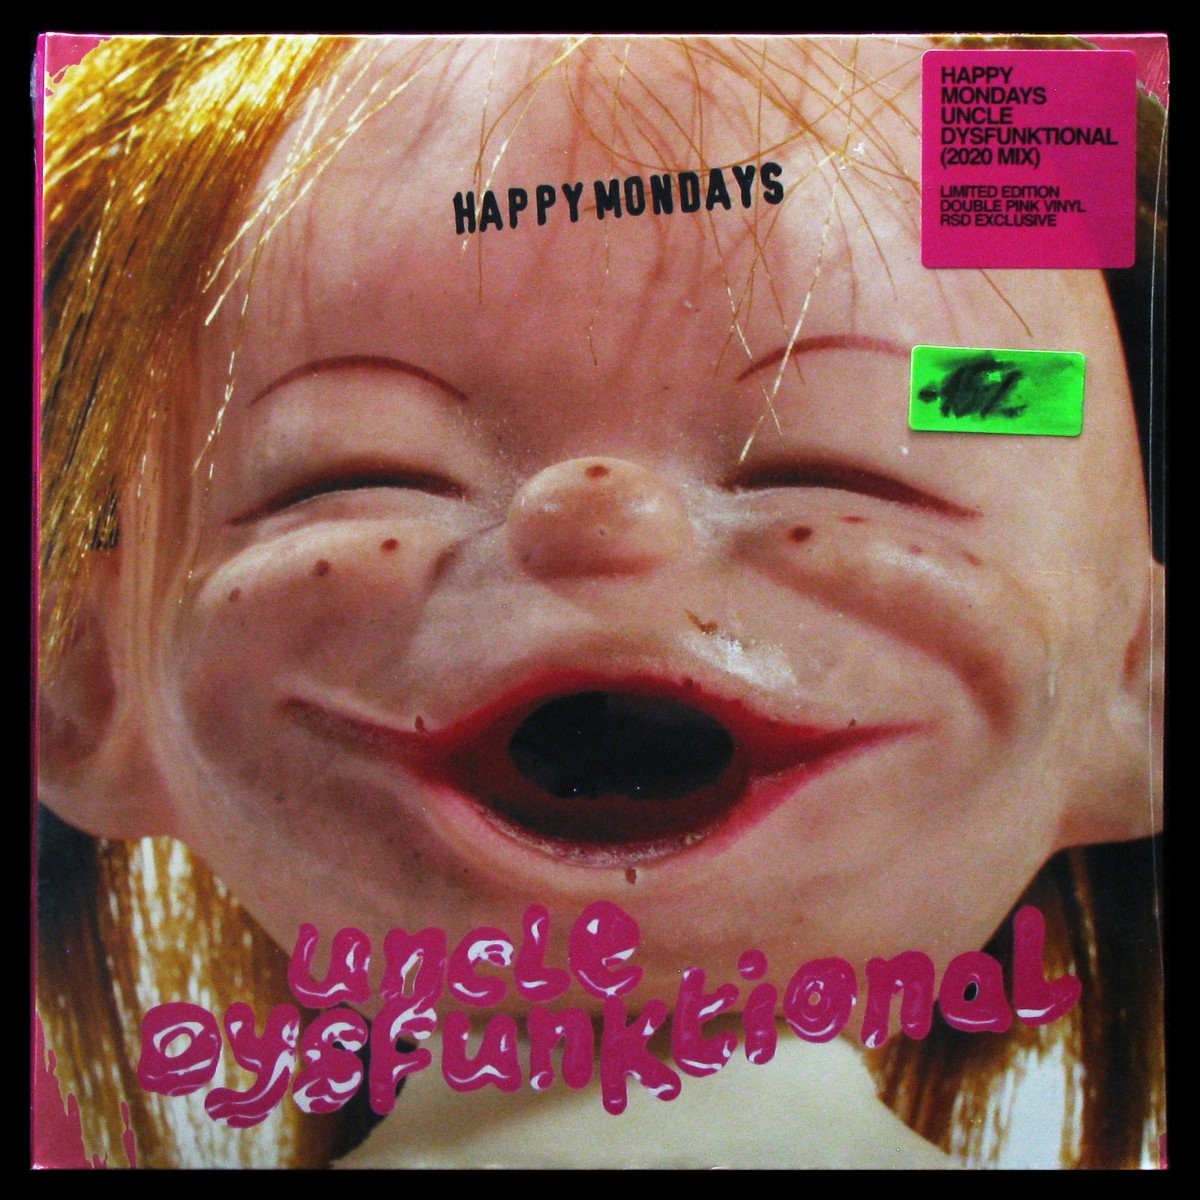 LP Happy Mondays — Uncle Dysfunktional (2020 mix) (2LP, coloured vinyl) фото